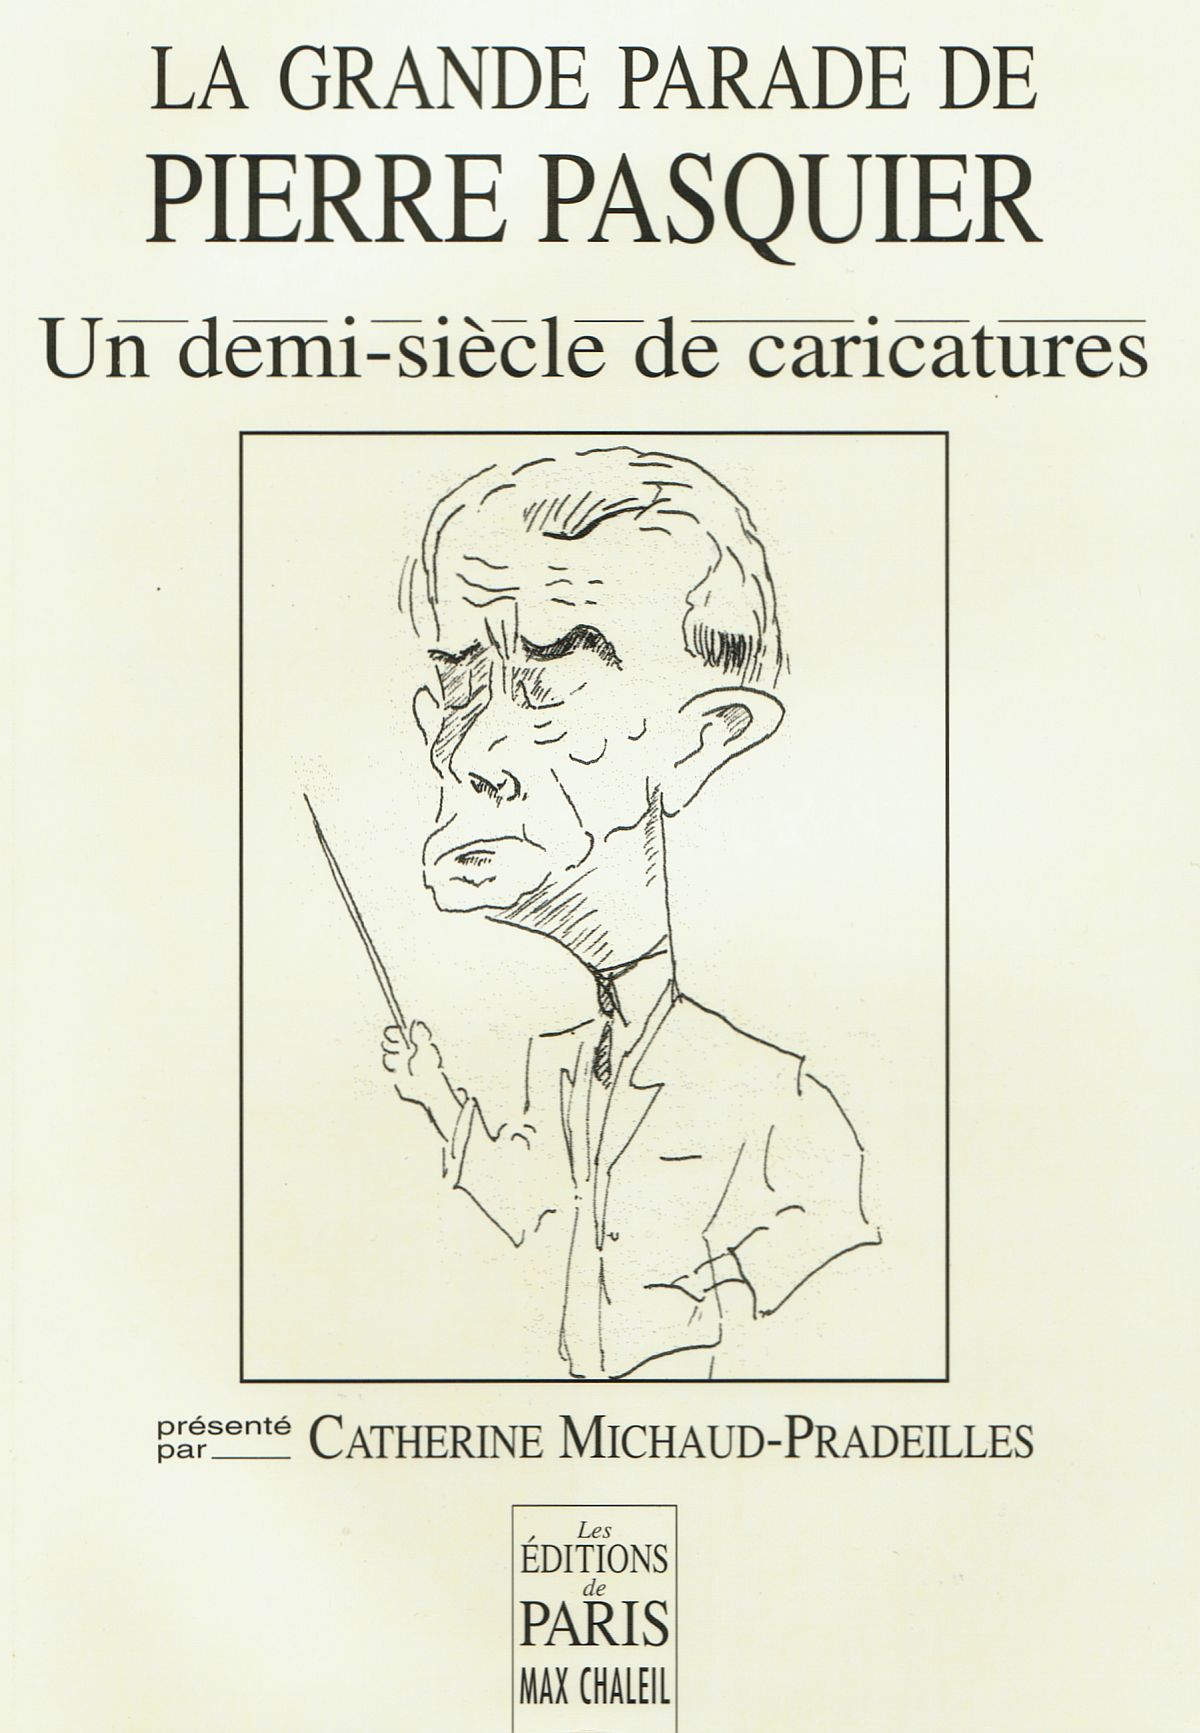 Page de couverture du livre «La Grande parade de Pierre Pasquier», dessins de Pierre Pasquier édités en 2004 par Catherine Michaud-Pradeilles aux Editions de Paris Max Chaleil, cliquer pour une vue agrandie